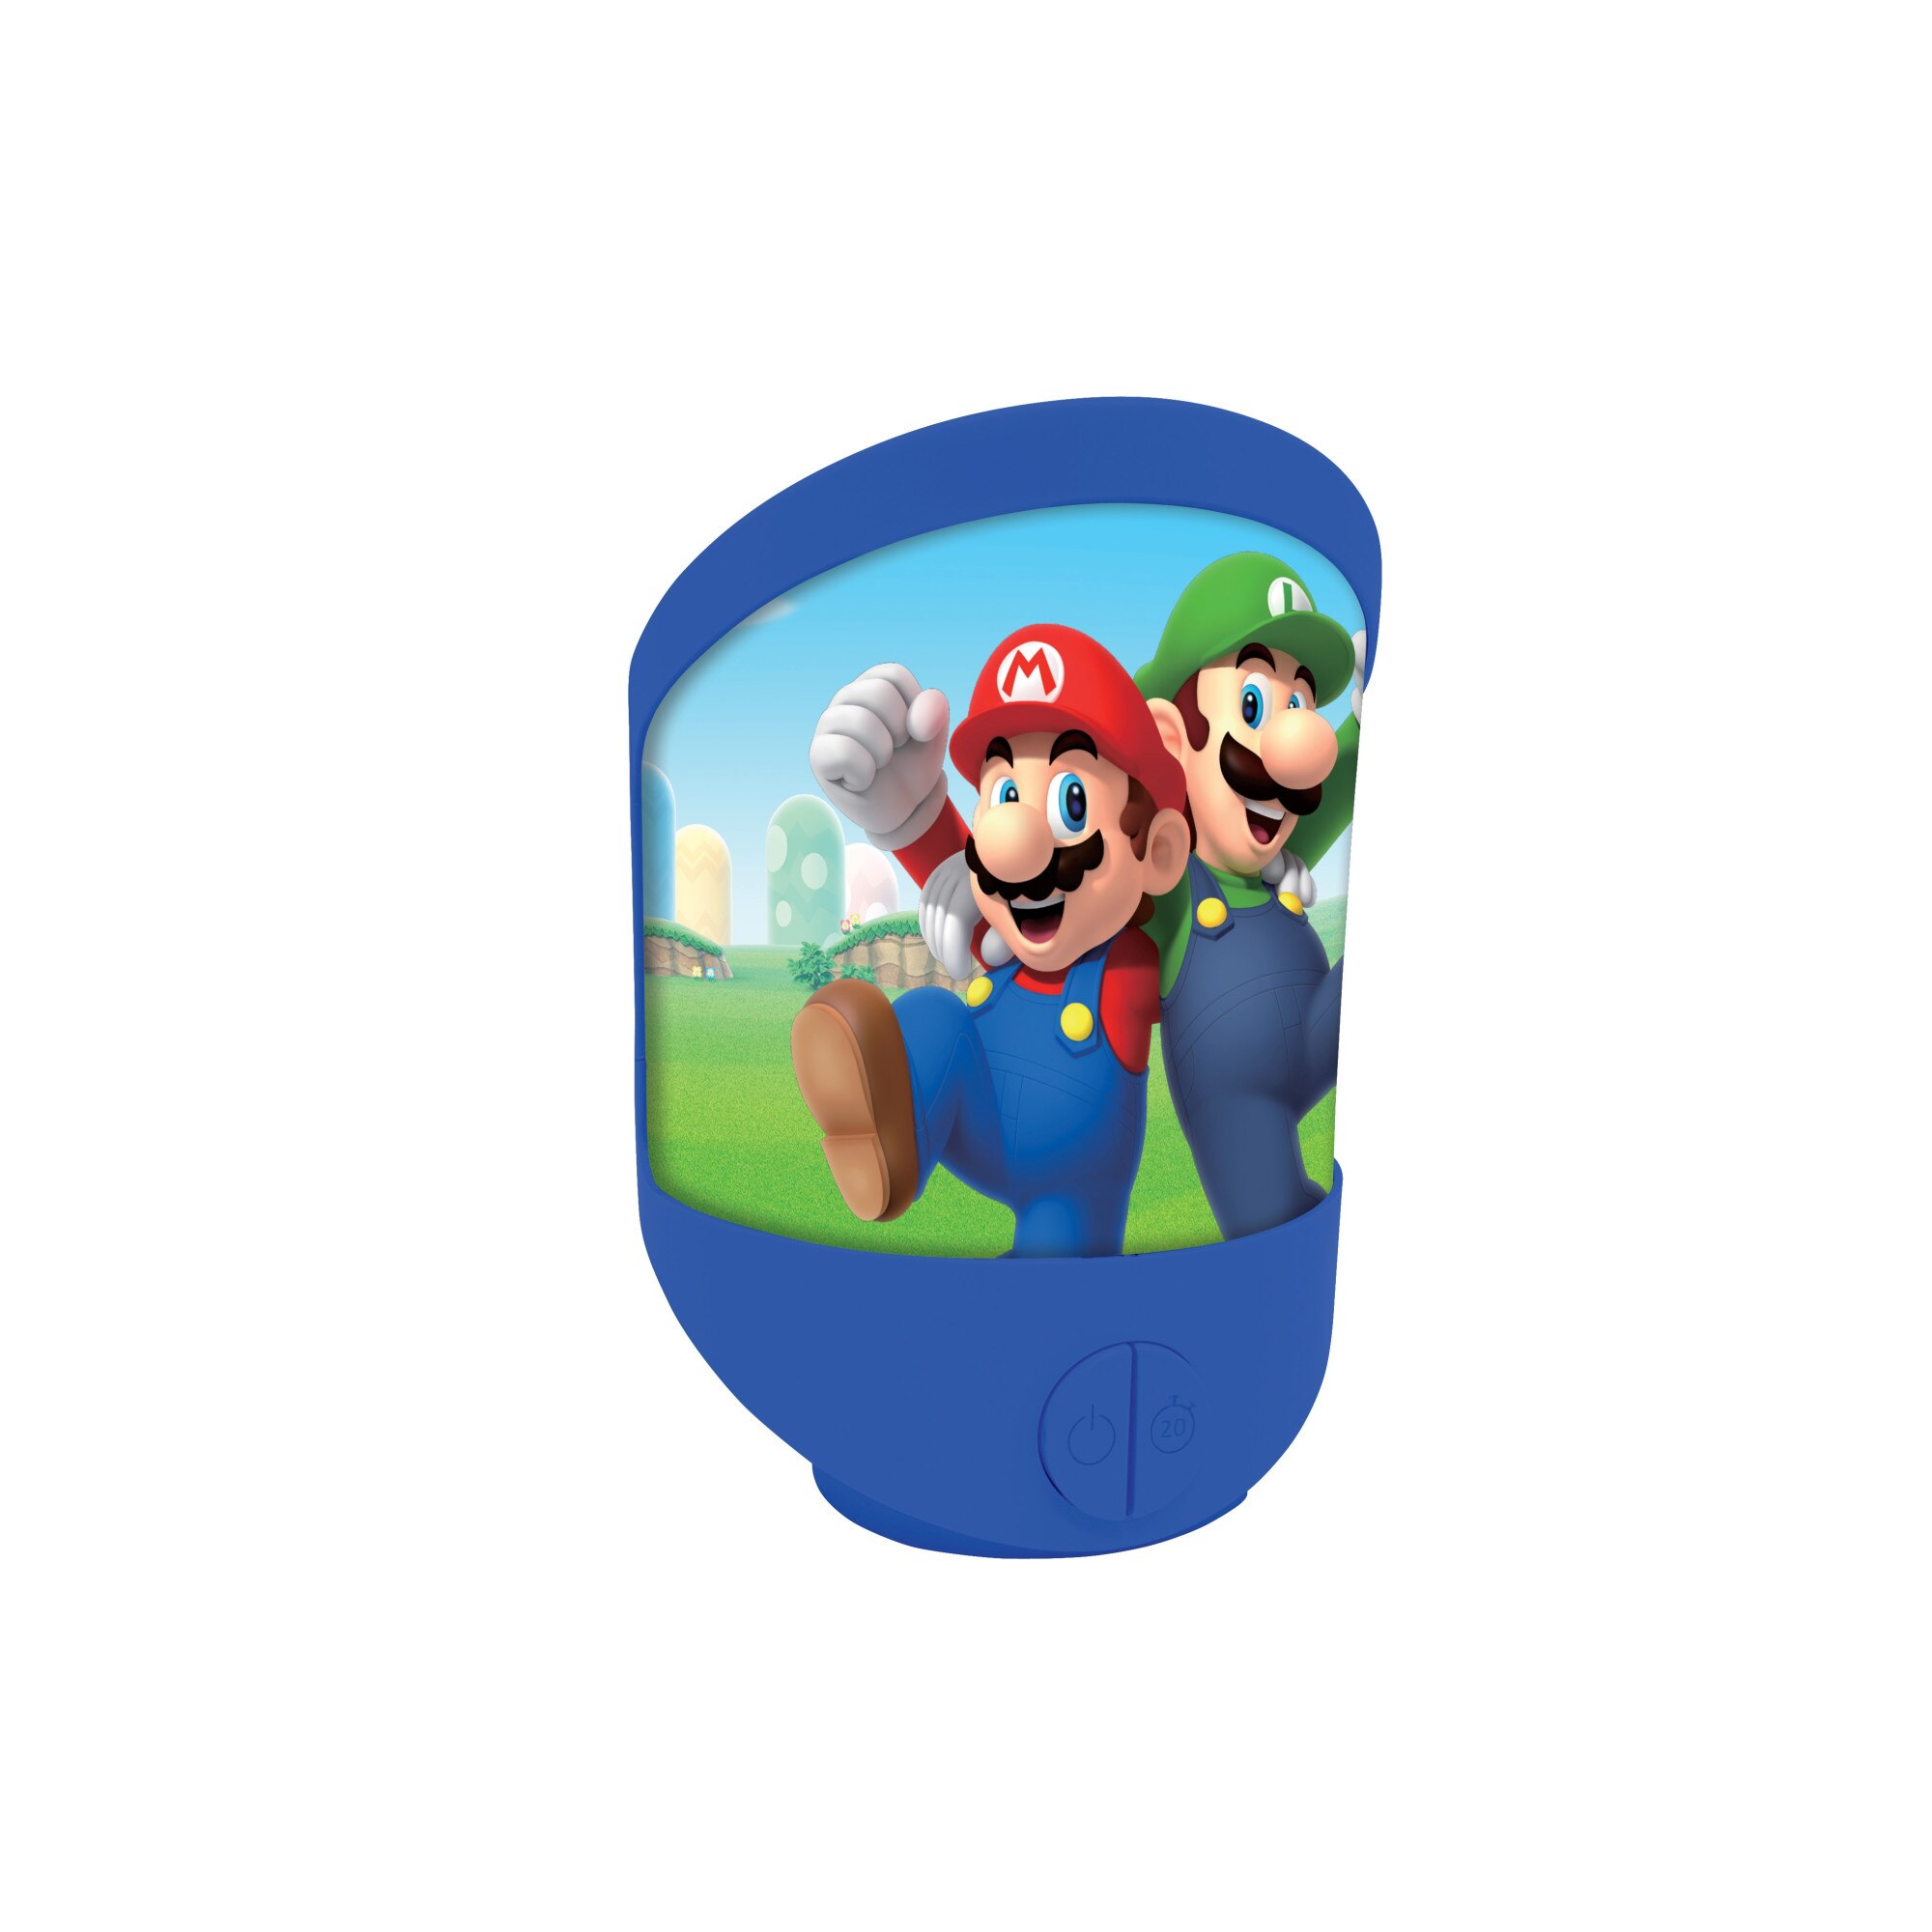 Super Mario labirintus - Mesésajandékok játék webáruház